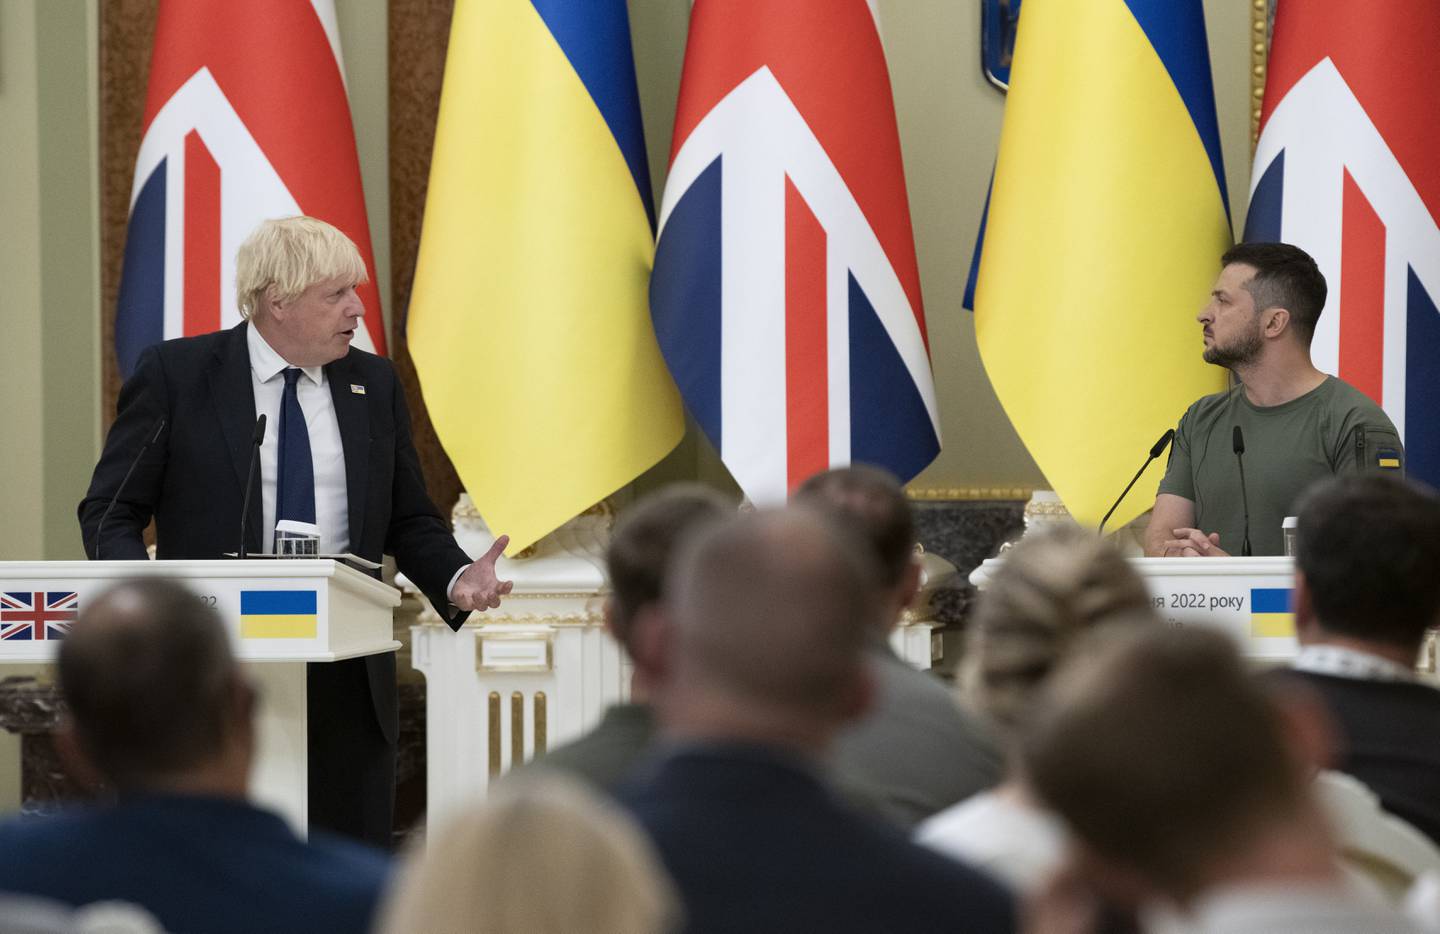 Storbritannias statsminister Boris Johnson lovet ytterligere 54 millioner pund i militærhjelp til Ukraina under sitt besøk i Kyiv på Ukrainas nasjonaldag onsdag. Foto: Andrew Kravchenko / AP / NTB